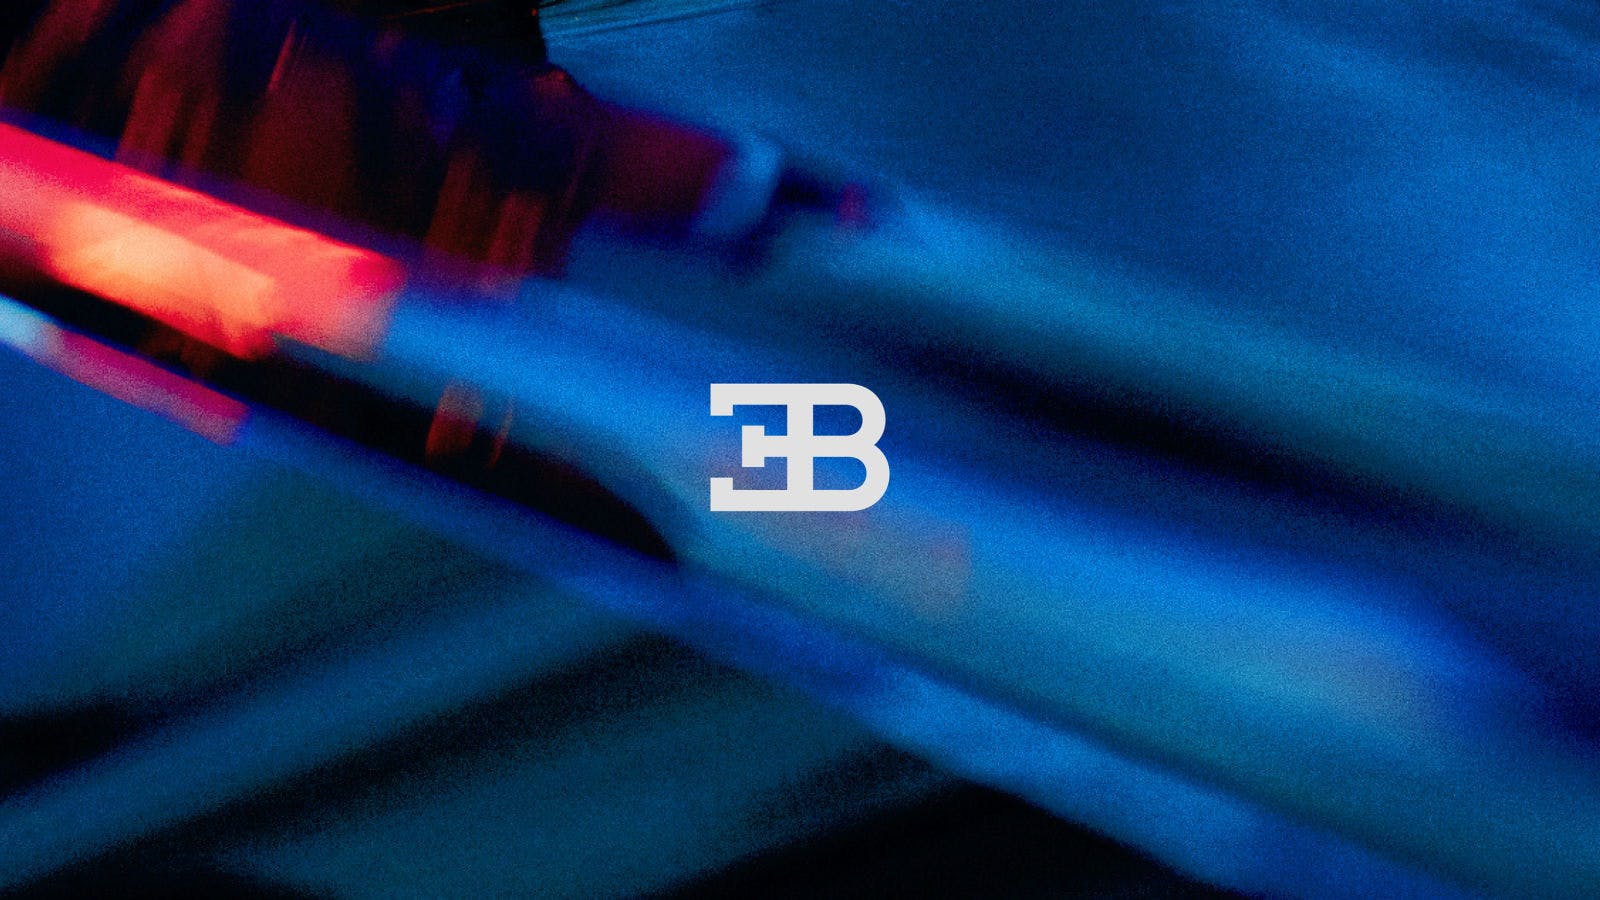 Das neue leuchtende Bugatti-Blau verweist auf die französischen Wurzeln der Marke und das ikonische EB-Logo auf die Initialen von Ettore Bugatti.